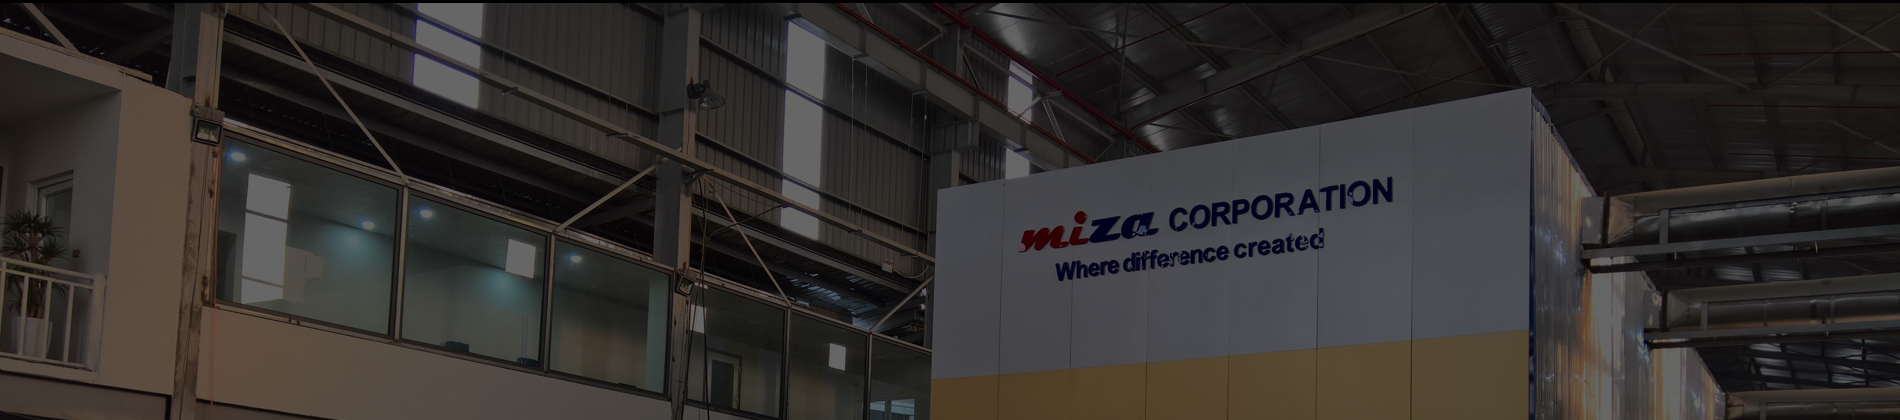 Công ty Cổ phần Miza: Lợi nhuận song hành cùng bảo vệ môi trường